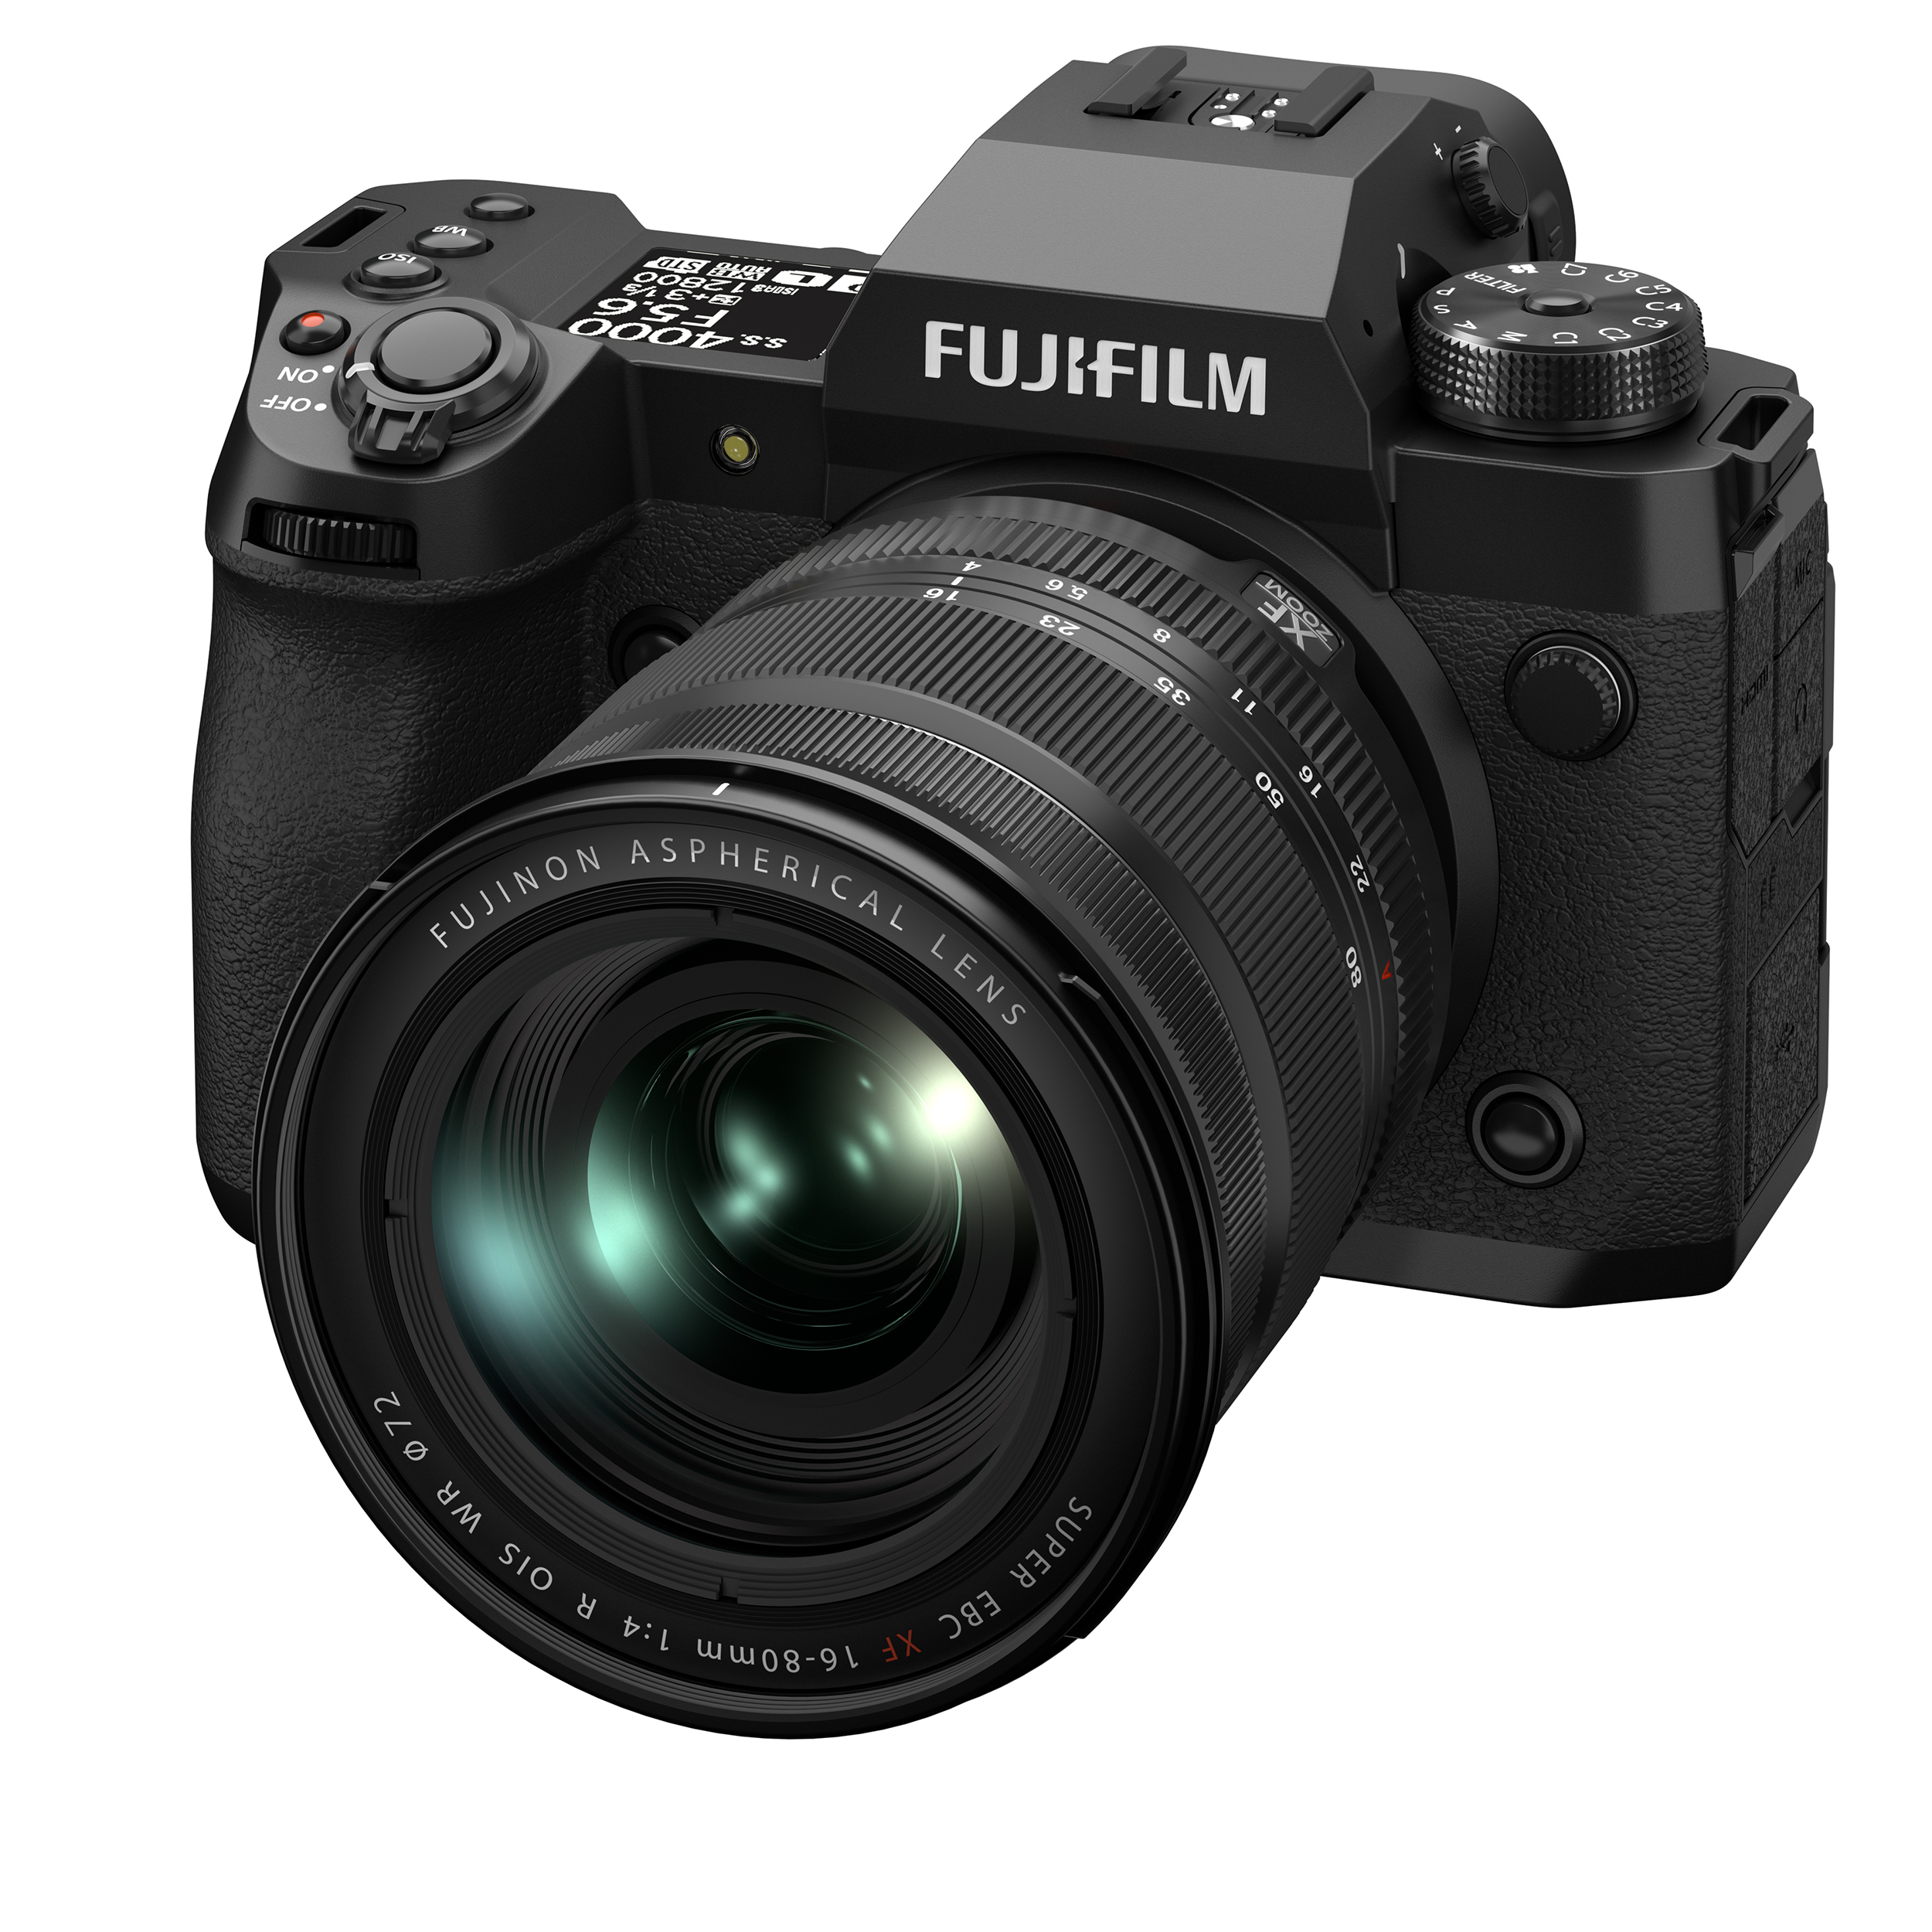 Caméra sans miroir Fujifilm X-H2 avec kit de lentilles Fujinon XF16-80mmf4 R oiS WR, noir